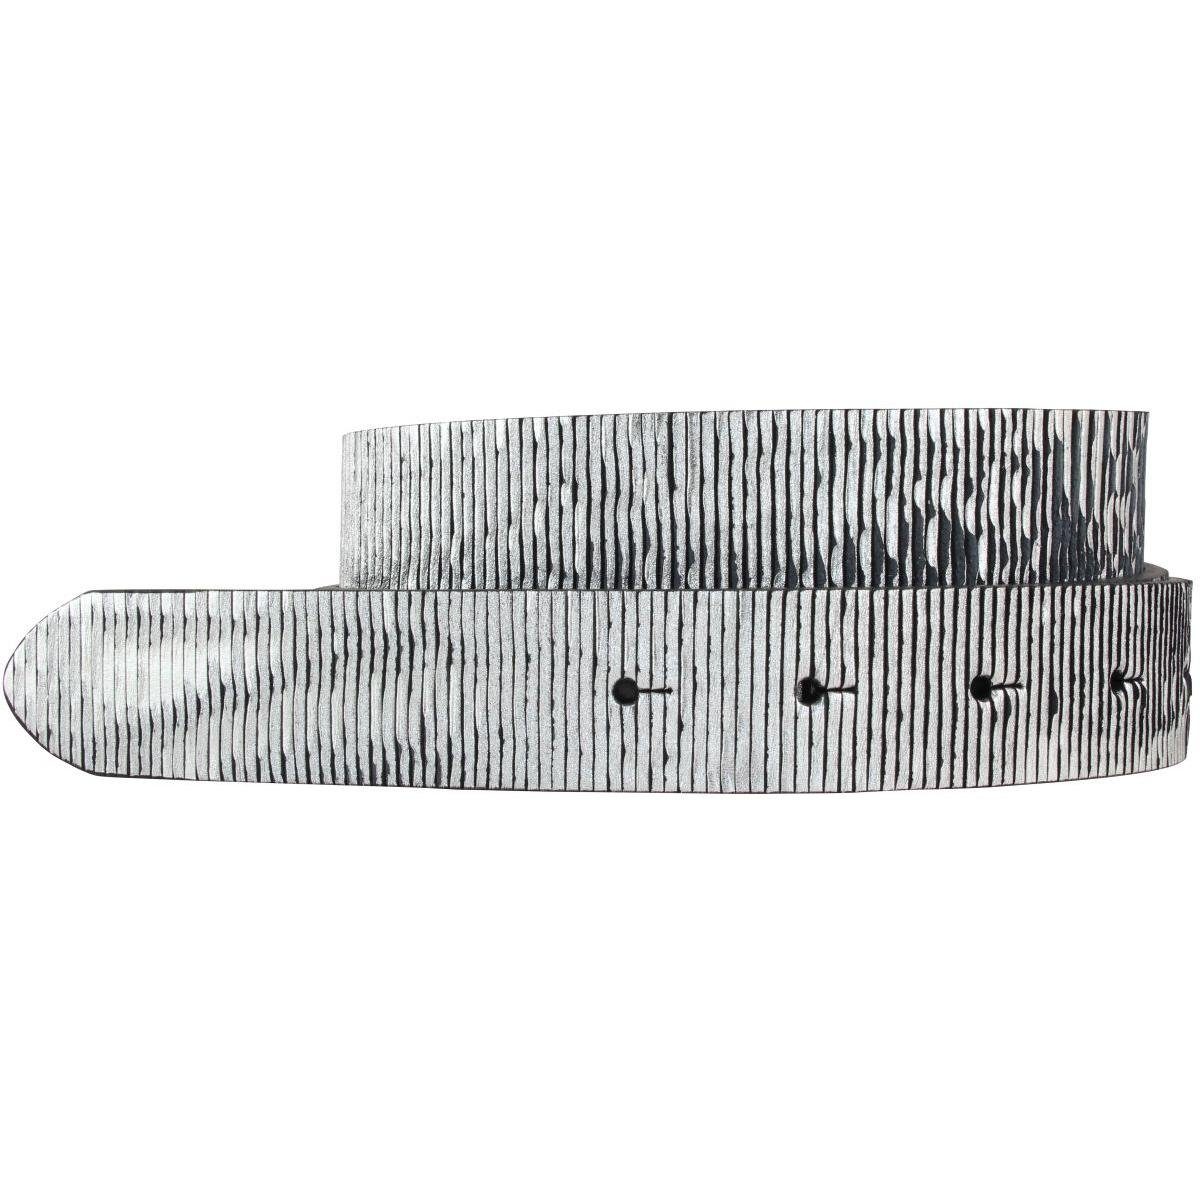 BELTINGER Ledergürtel Gürtel aus Vollrindleder Metall-Optik ohne Schnalle 3,0 cm - Leder-Gür Schwarz Metallik